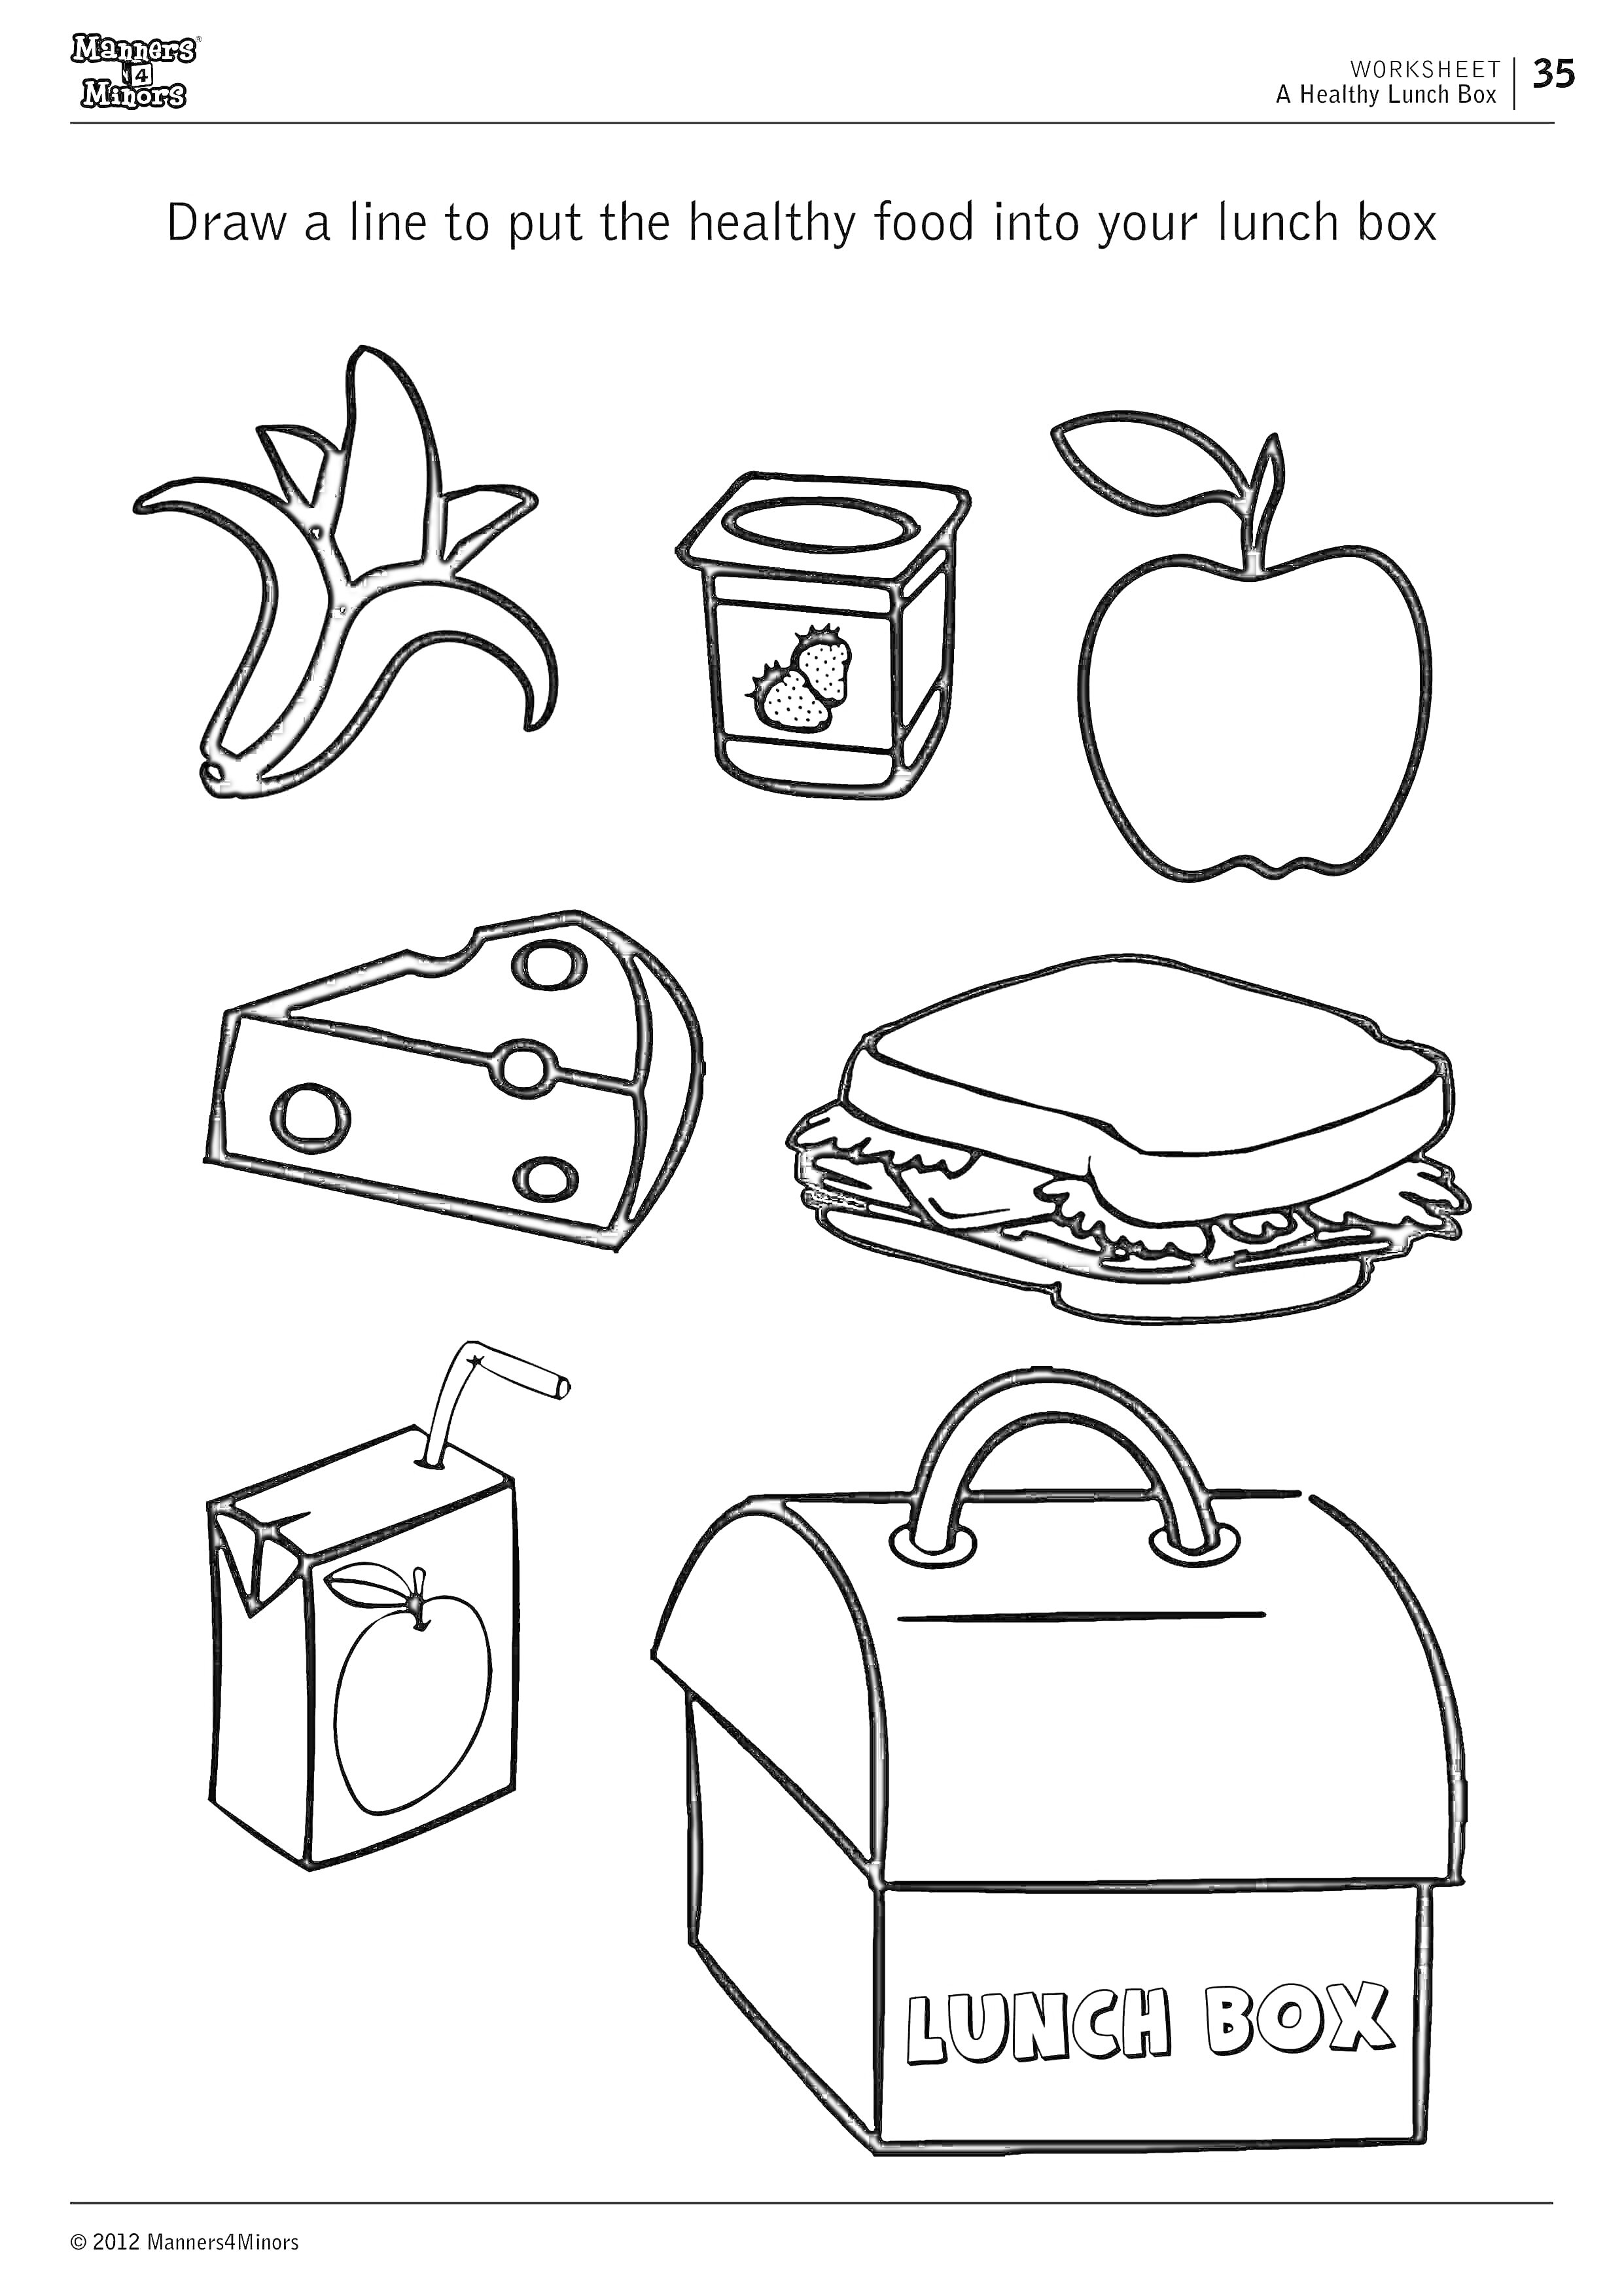 На раскраске изображено: Банан, Йогурт, Яблоко, Сыр, Бутерброд, Пакет сока, Еда, Школьный обед